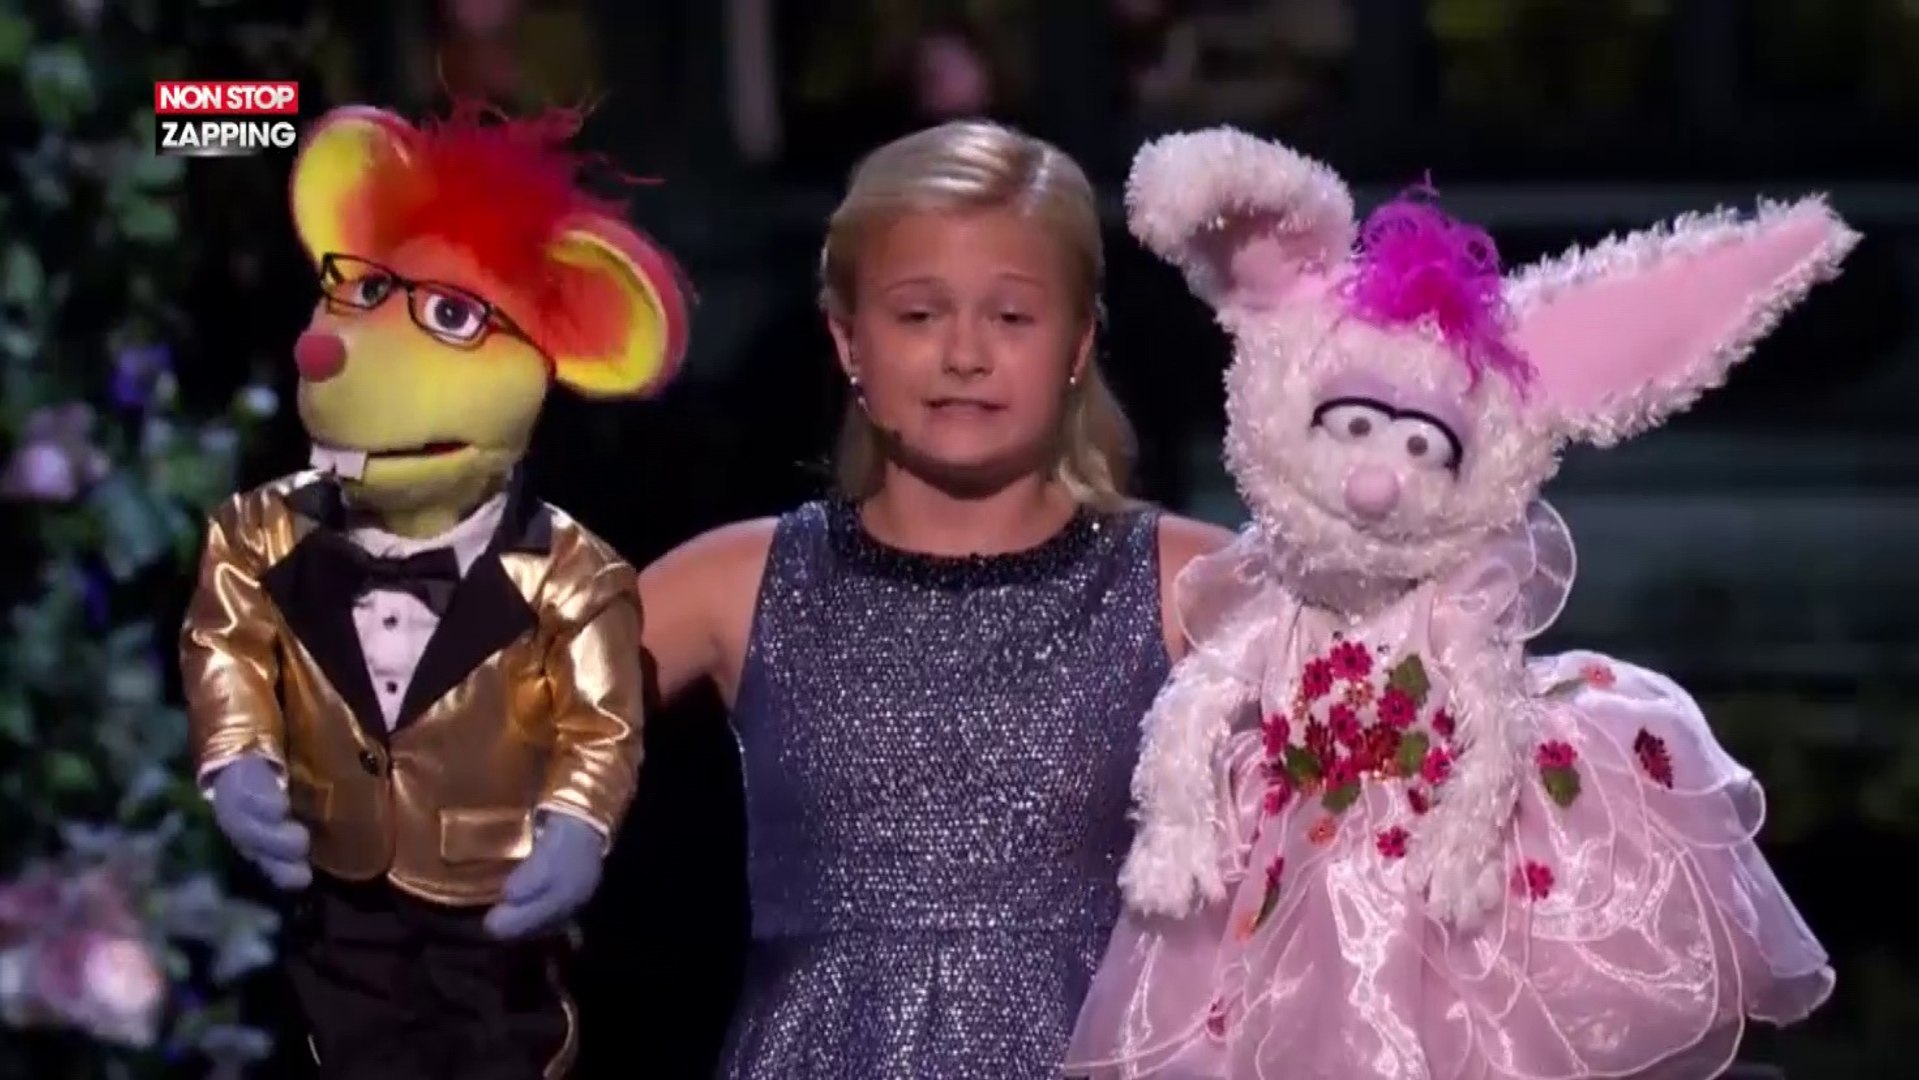 Une fille de 12 ans fait un numéro de ventriloque à America's Got Talent